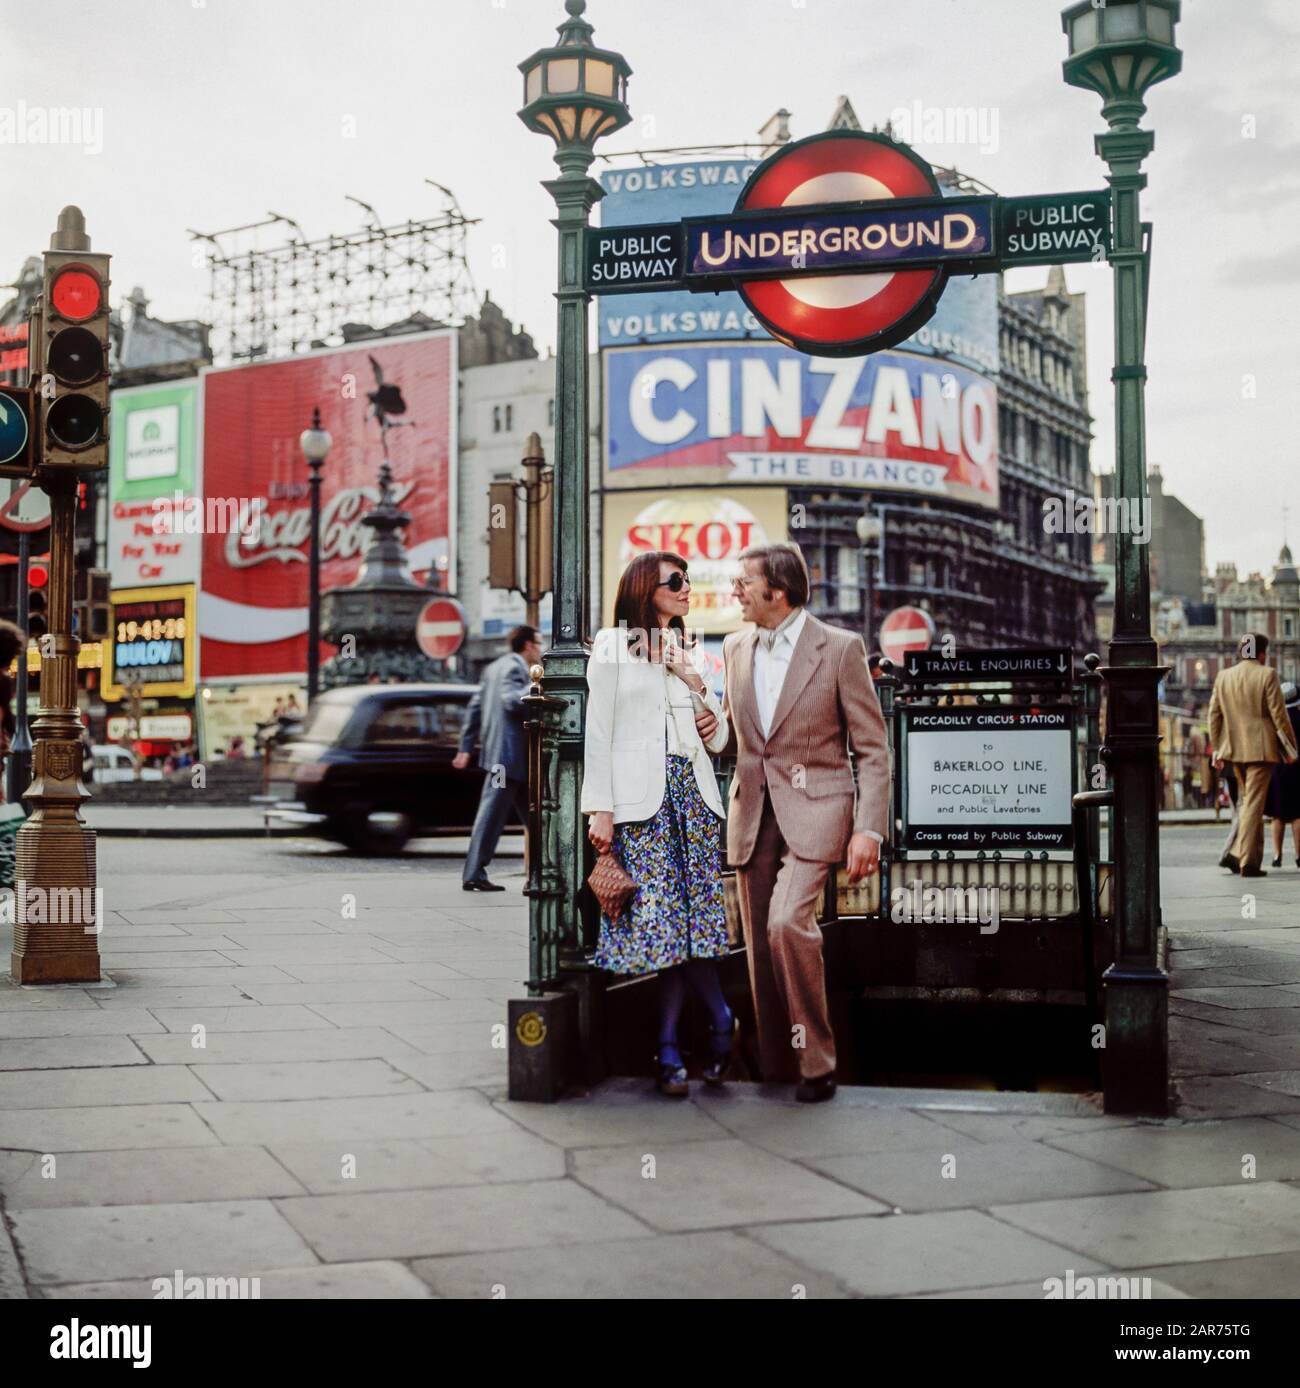 Londres 1970s, couple élégant, sortie de métro public, panneau de métro Evening, Piccadilly Circus, Angleterre, Royaume-Uni,GB, Grande-Bretagne, Banque D'Images